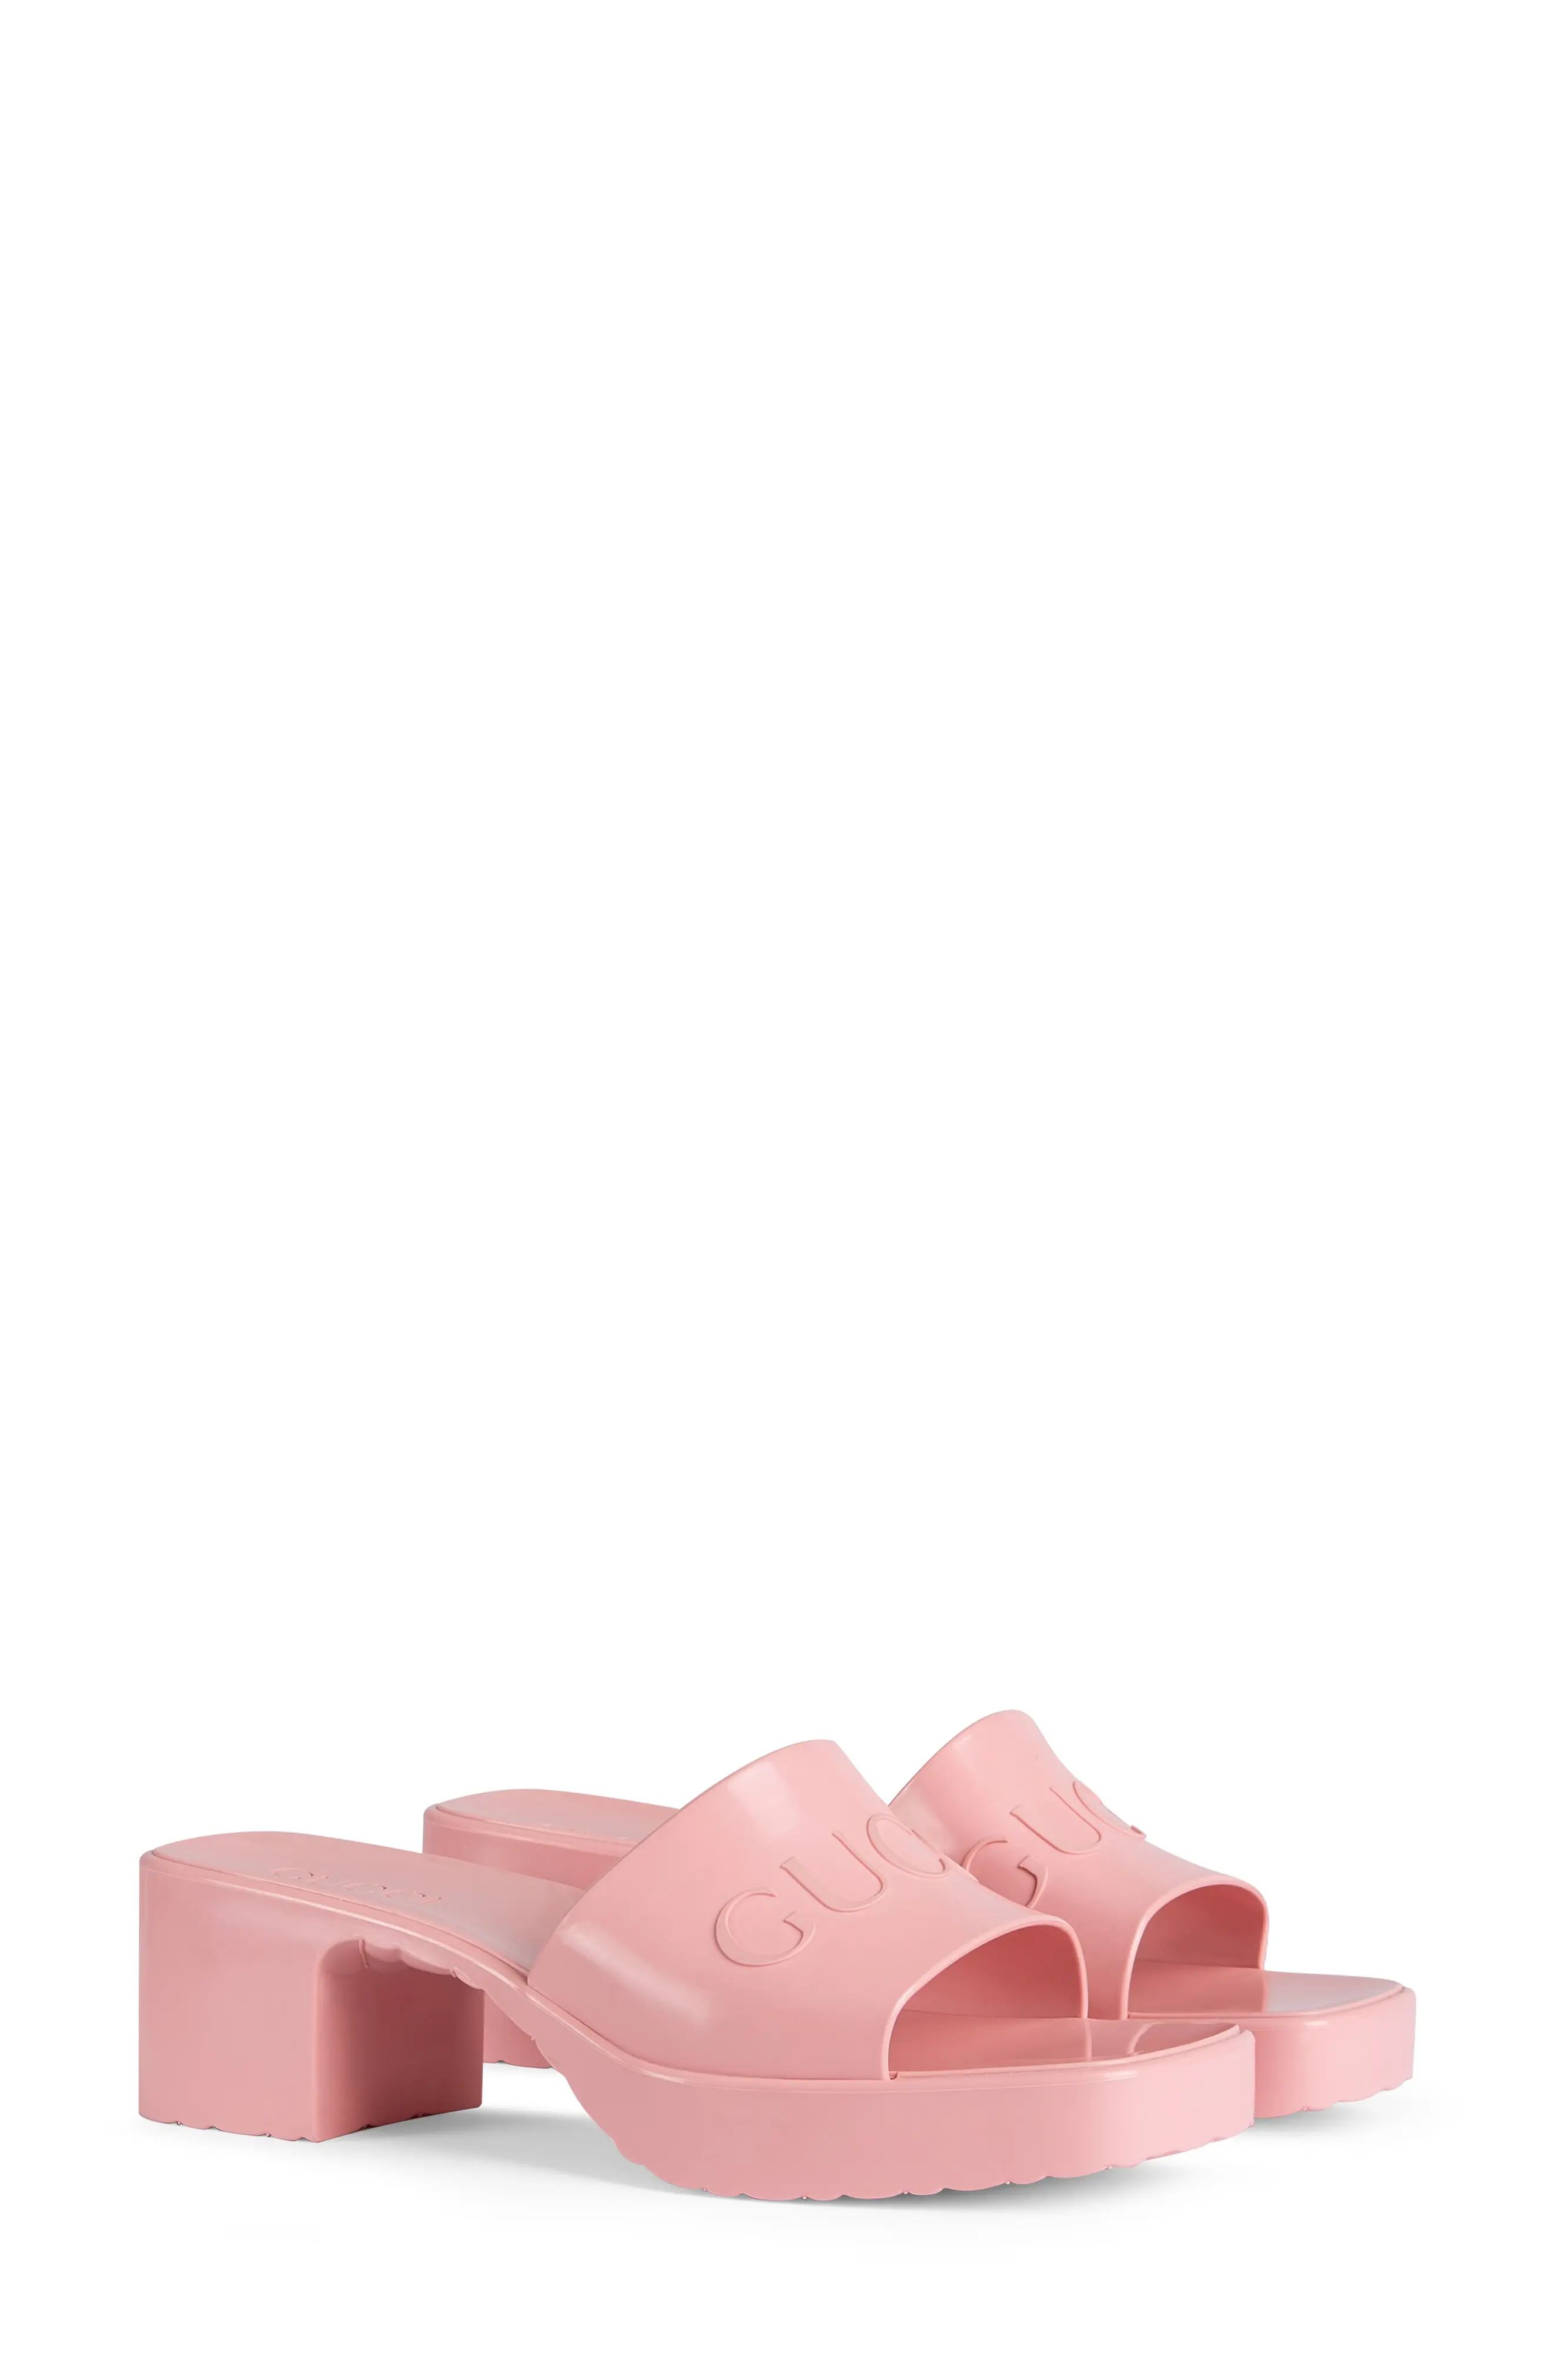 Women's Gucci Rubber Logo Platform Slide Sandal, Size 9US - Pink | Nordstrom